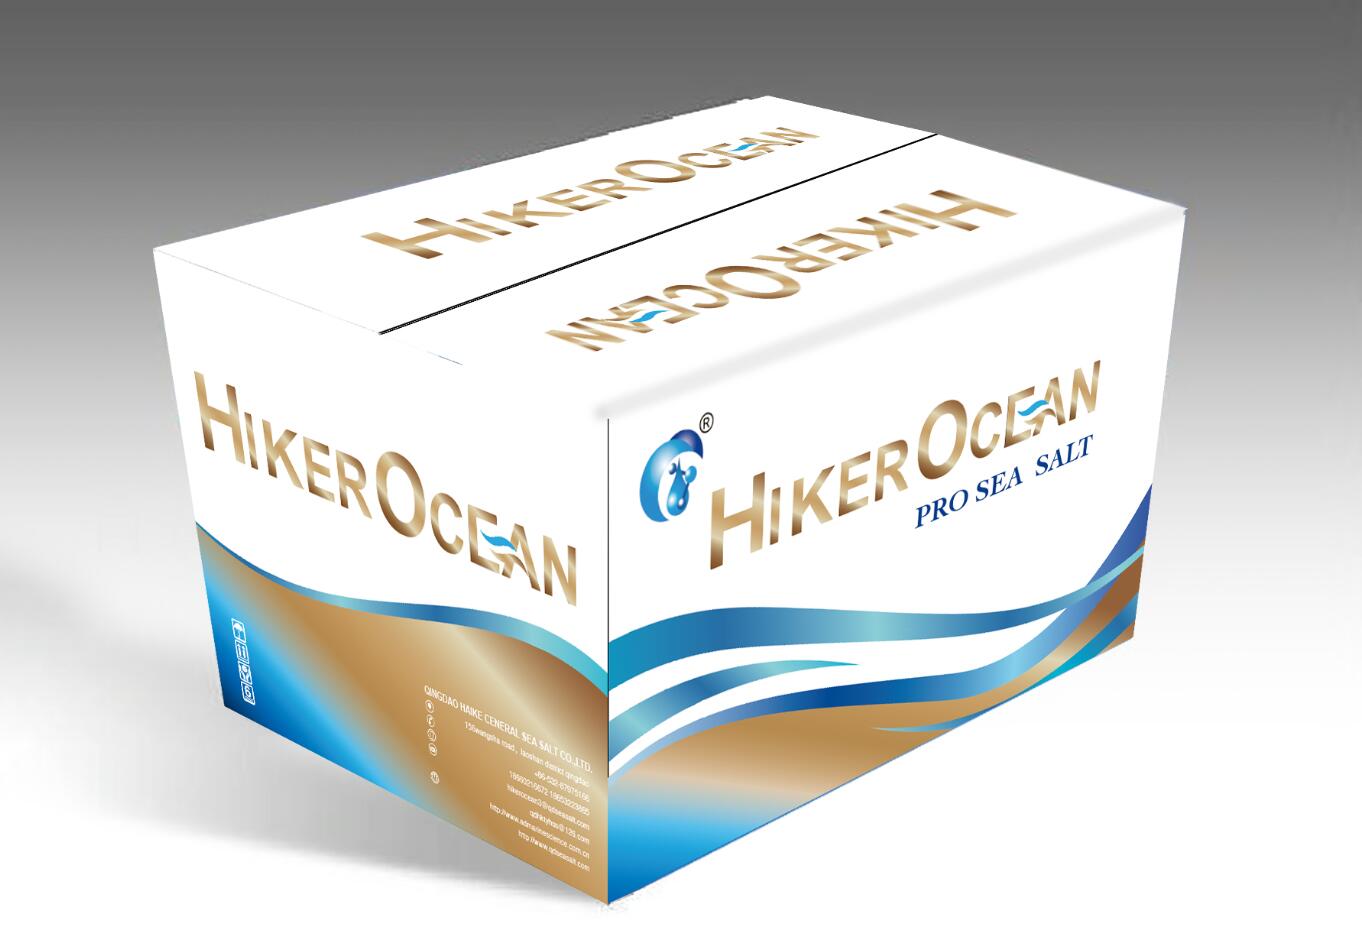 Hiker Ocean SPS Reef Salt